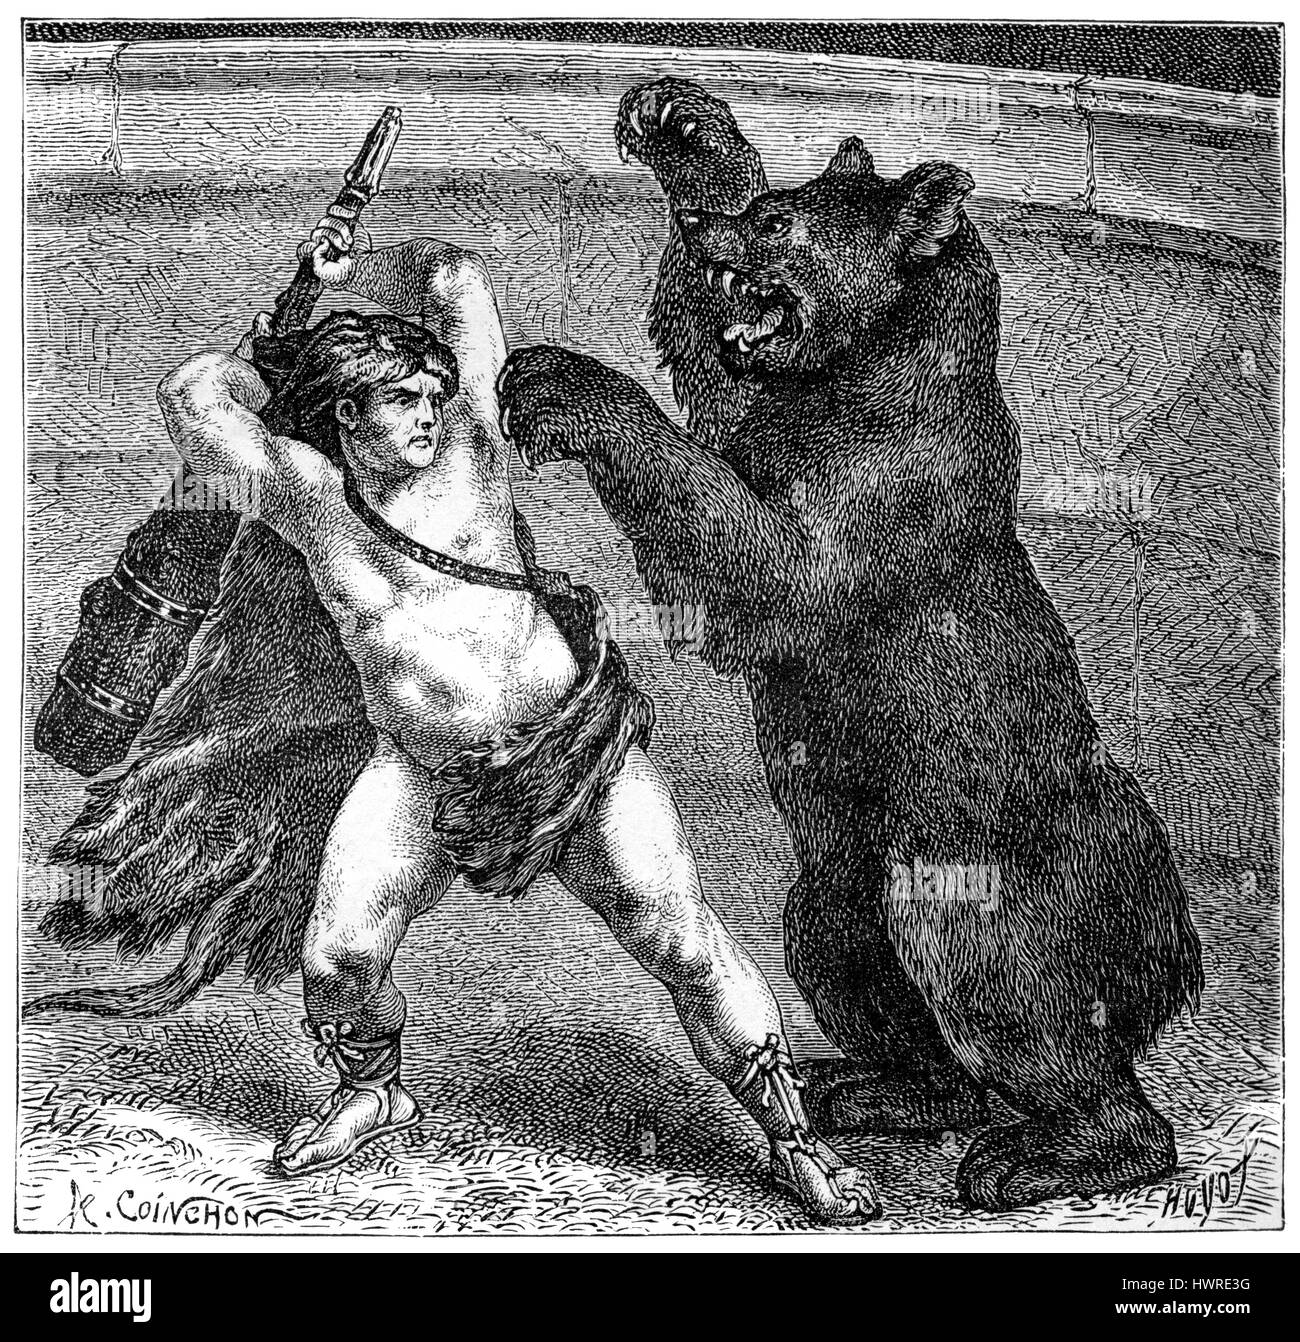 Römischen Circus. Empero Lucius Aurelius Commodus in seinem Personna als Herkules kämpft Bea mit einem schweren Weaponr. Stockfoto